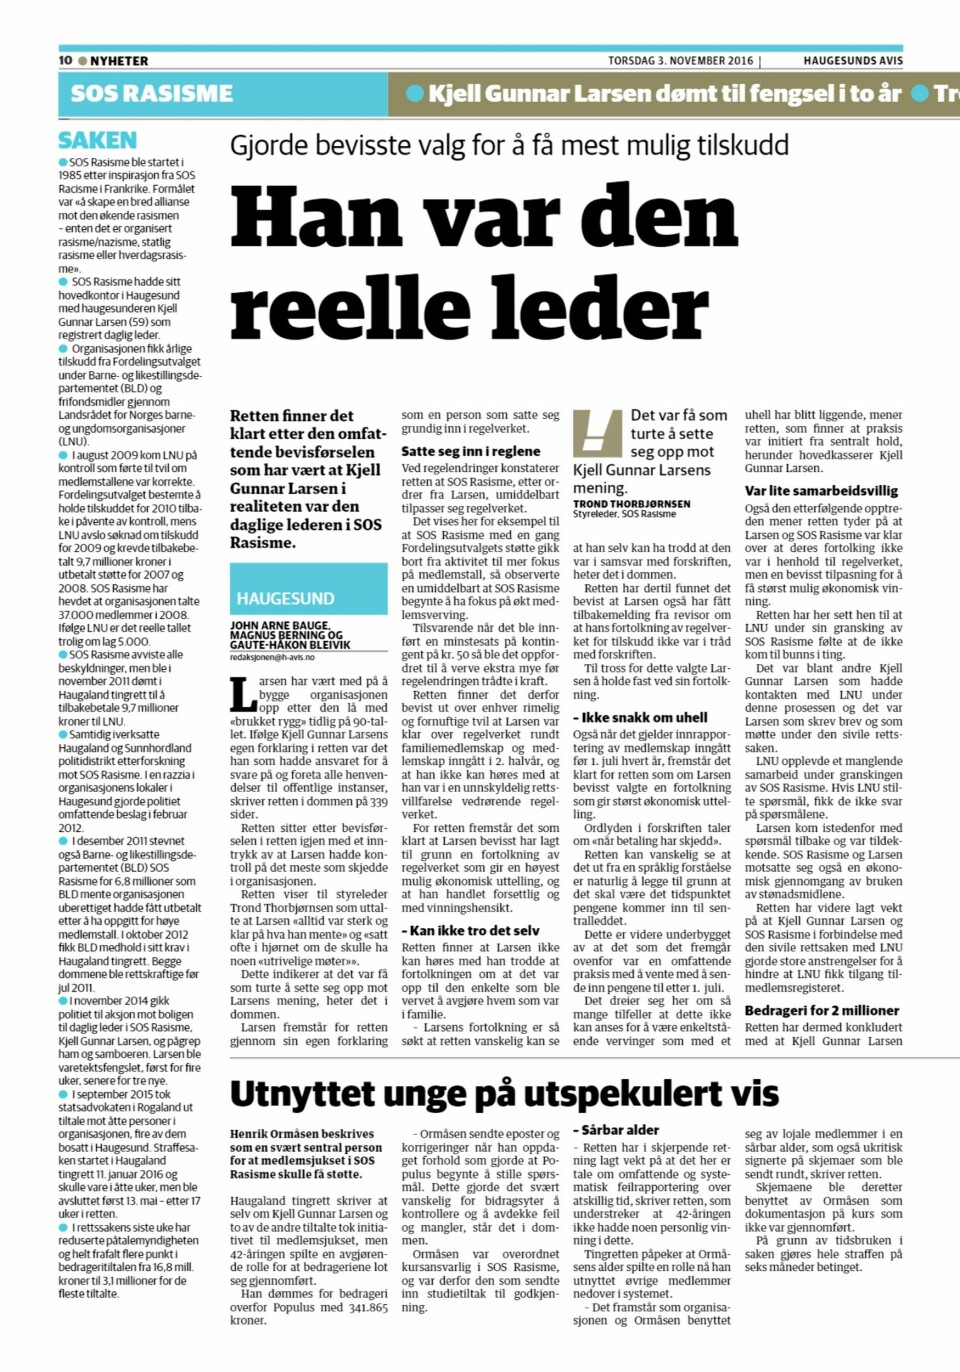 Hele oppslaget i papirutgaven til Haugesunds Avis 3. november 2016. I sitt tilsvar påpeker avisen at den domfelte Henrik Ormåsen aldri har vært noen sentral person i omtalen av saken.